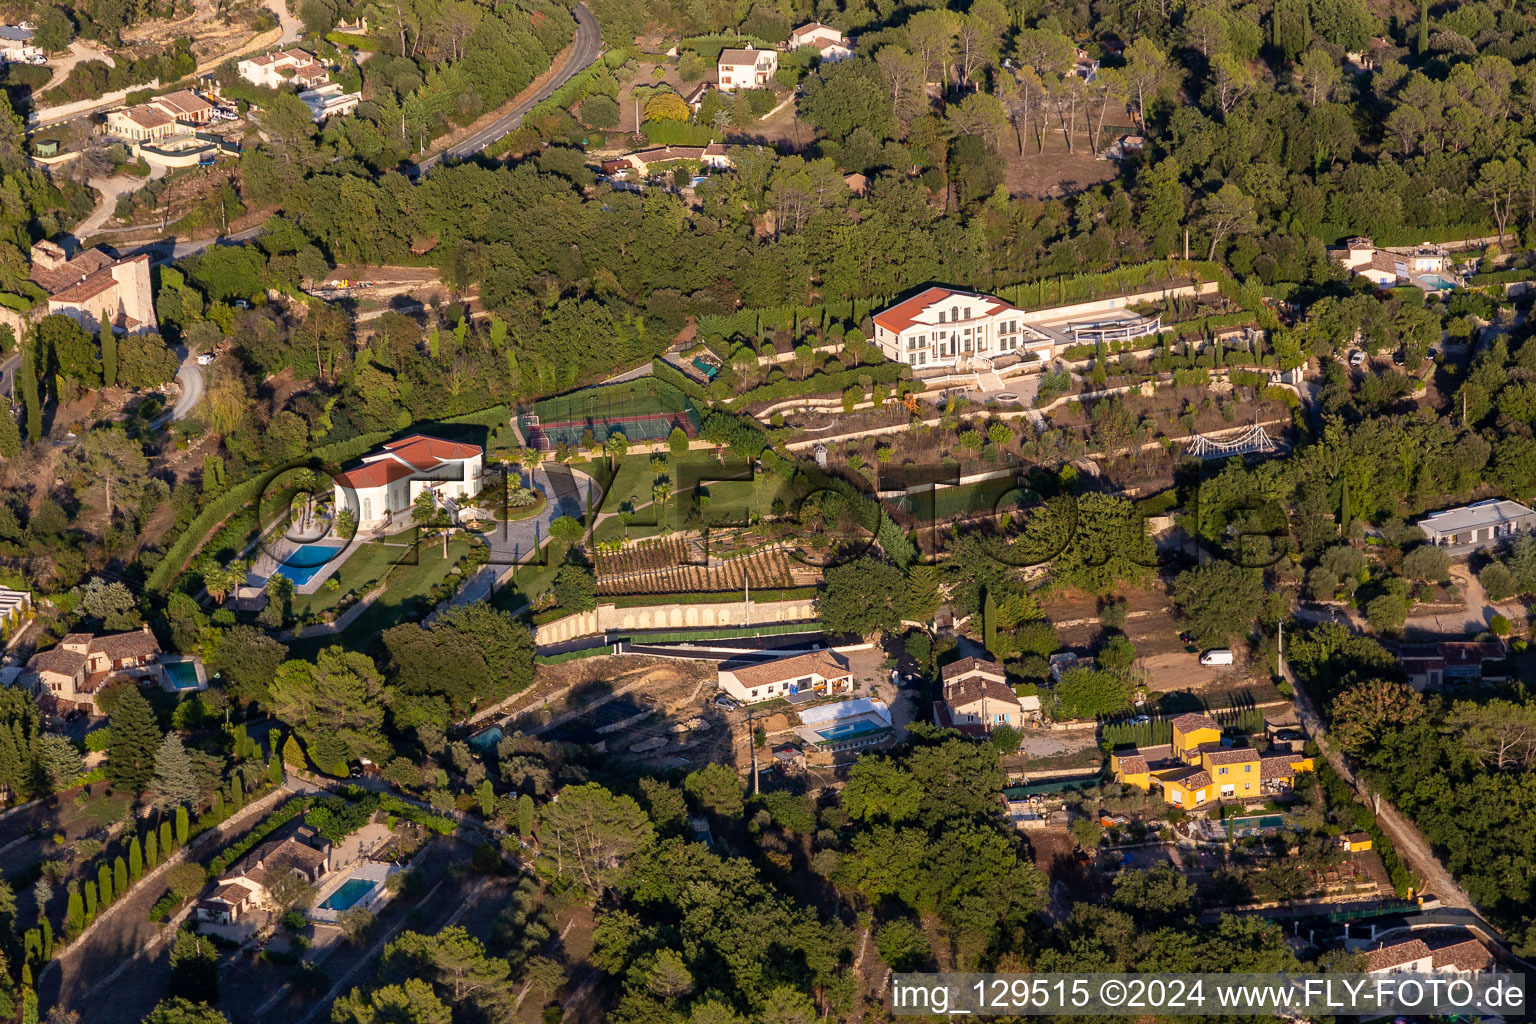 Luxus- Villa - Einfamilienhaus mit Terrassenpark, Tennisplatz und Pool in Montauroux in Provence-Alpes-Cote d'Azur im Bundesland Var, Frankreich